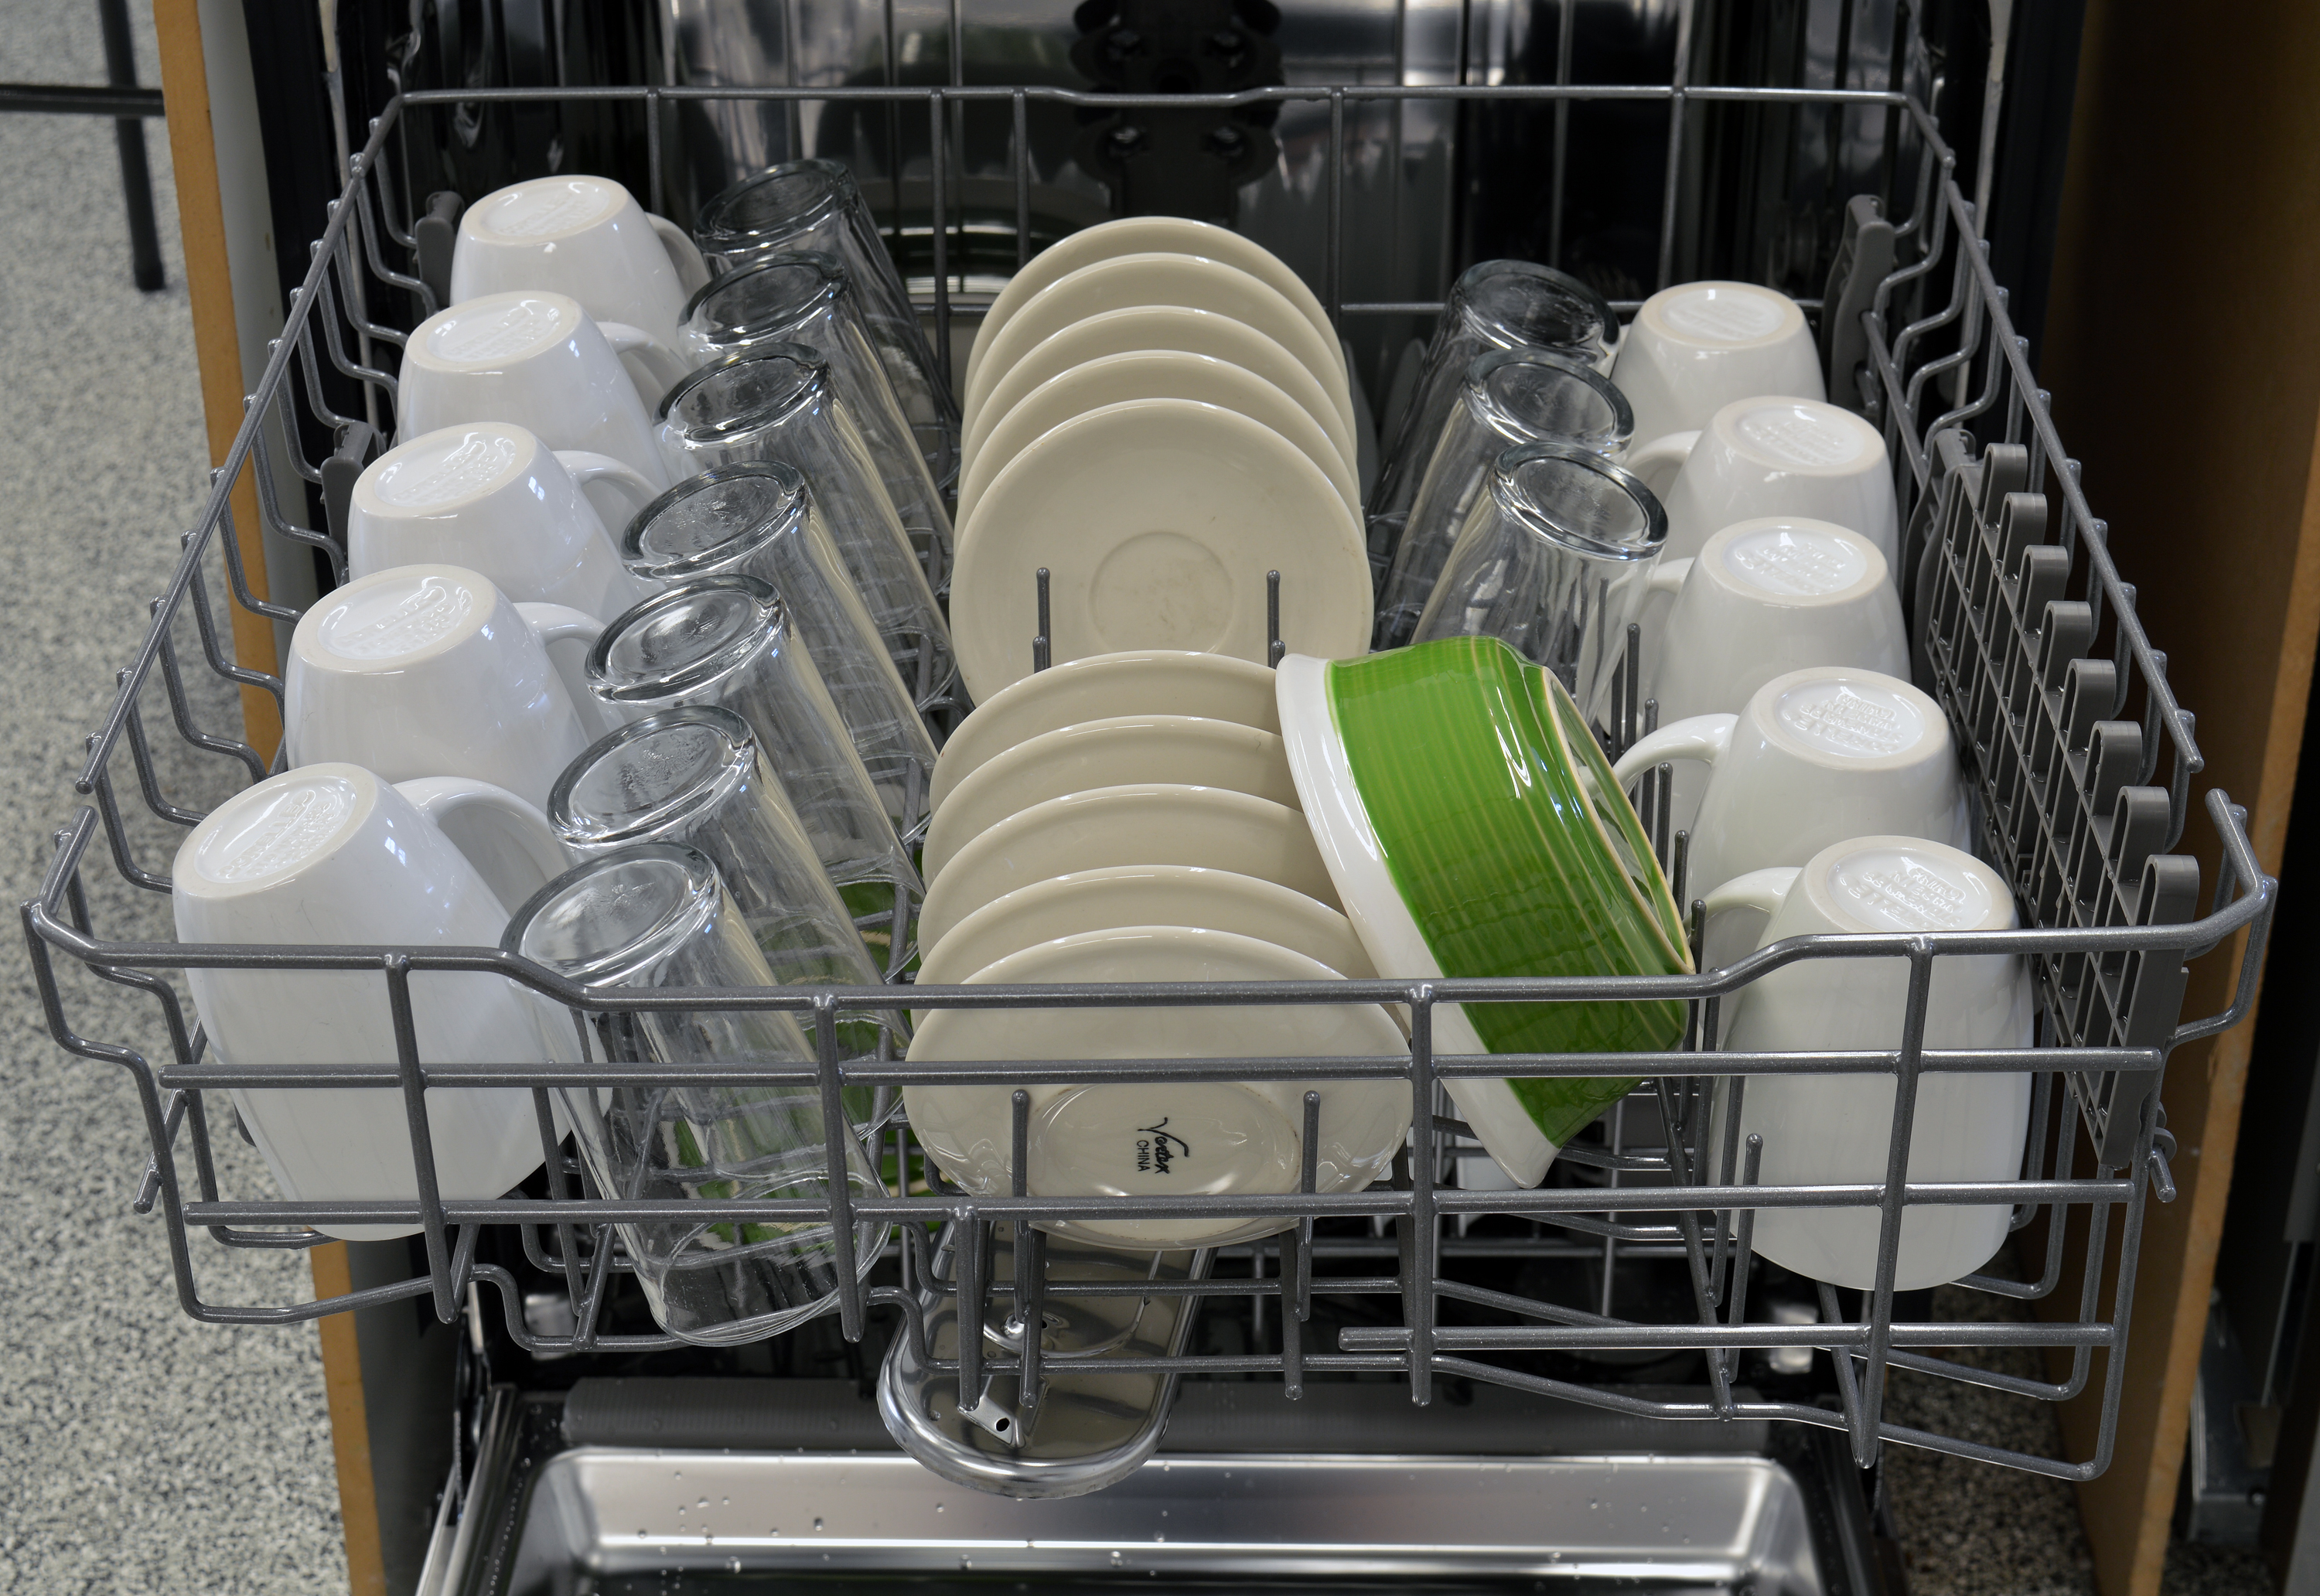 Кастрюли можно мыть в посудомойке. Загрузка посуды в посудомоечную машину Bosch 45 см. Расстановка посуды в посудомоечной машине. Расположение посуды в посудомойке. Расстановка посуды в посудомойке.